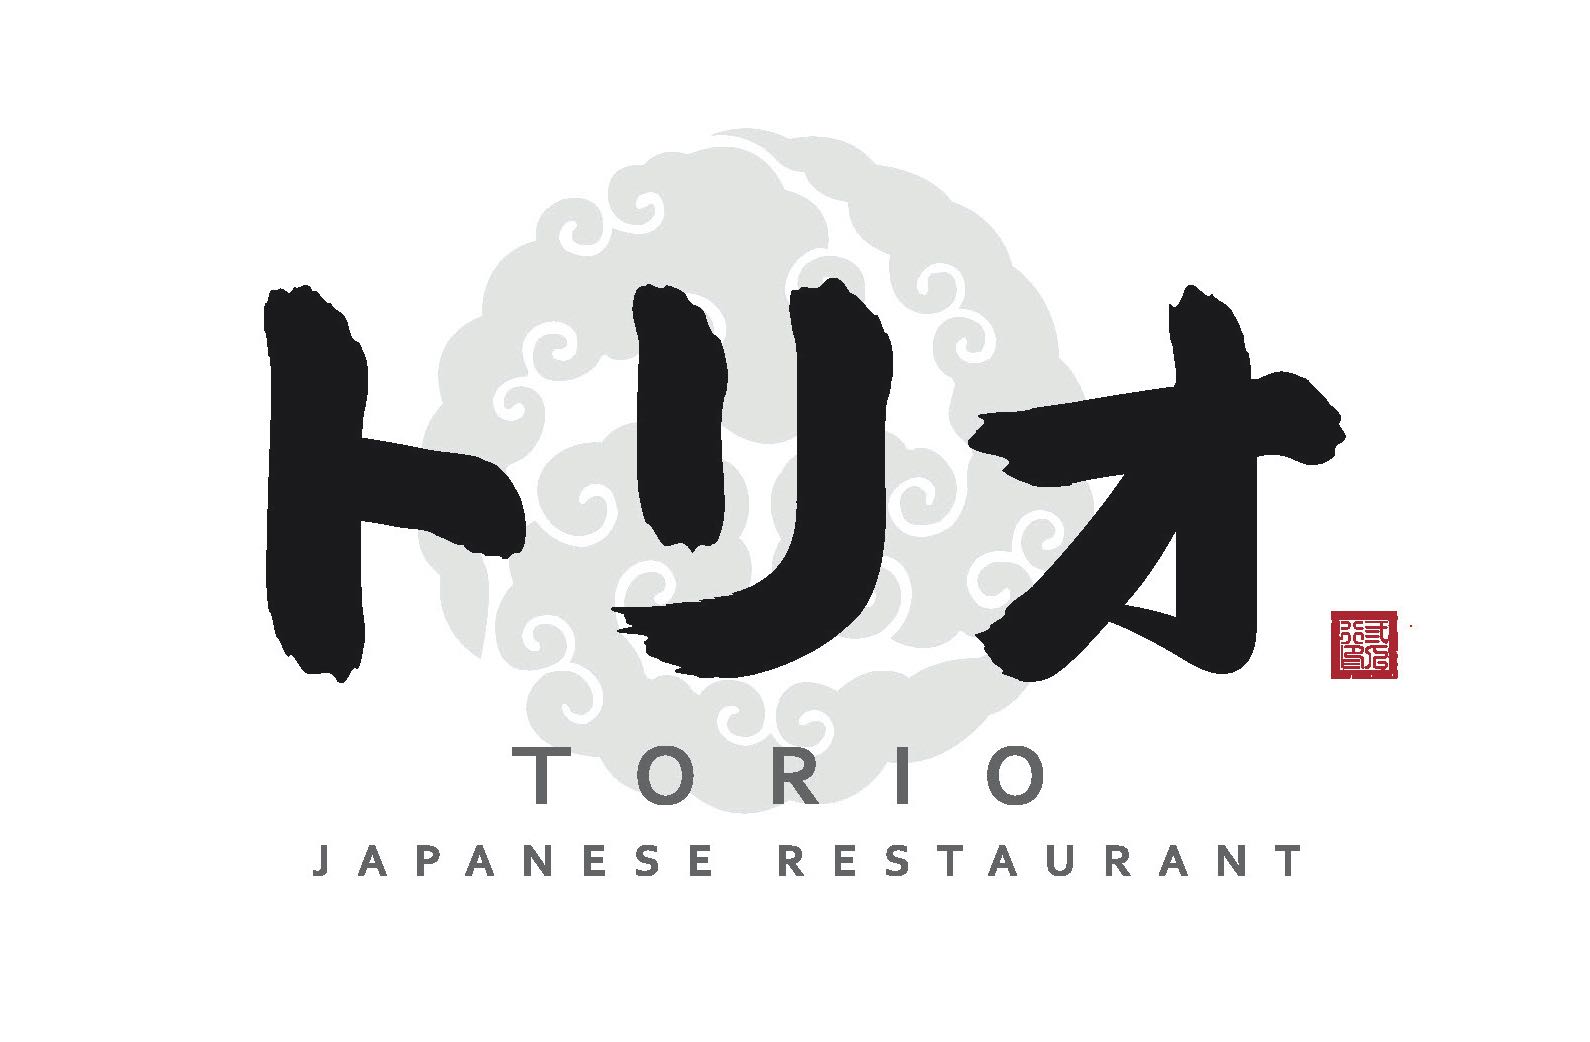 Company logo for Torio Japanese Restaurant Pte. Ltd.